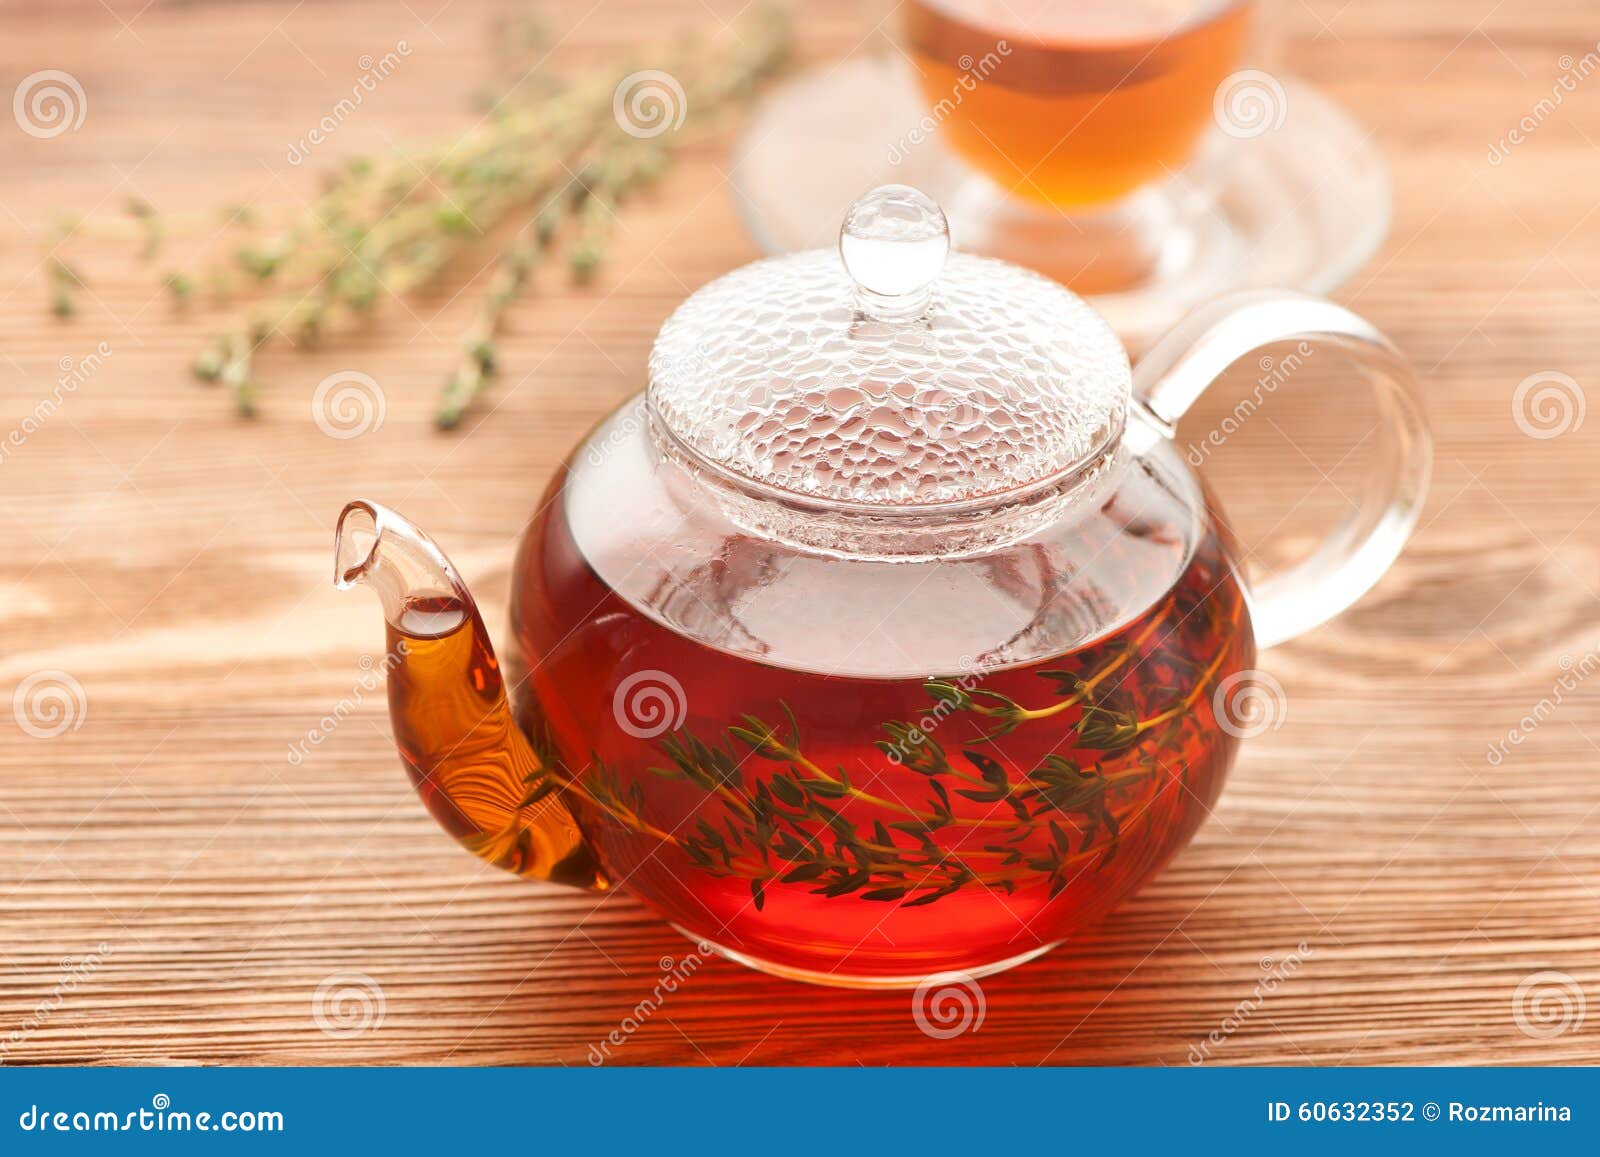 Травяной чай черный. Чайник с травами. Чай в чайнике. Чайник с травяным чаем. Чай с травами в чайнике.